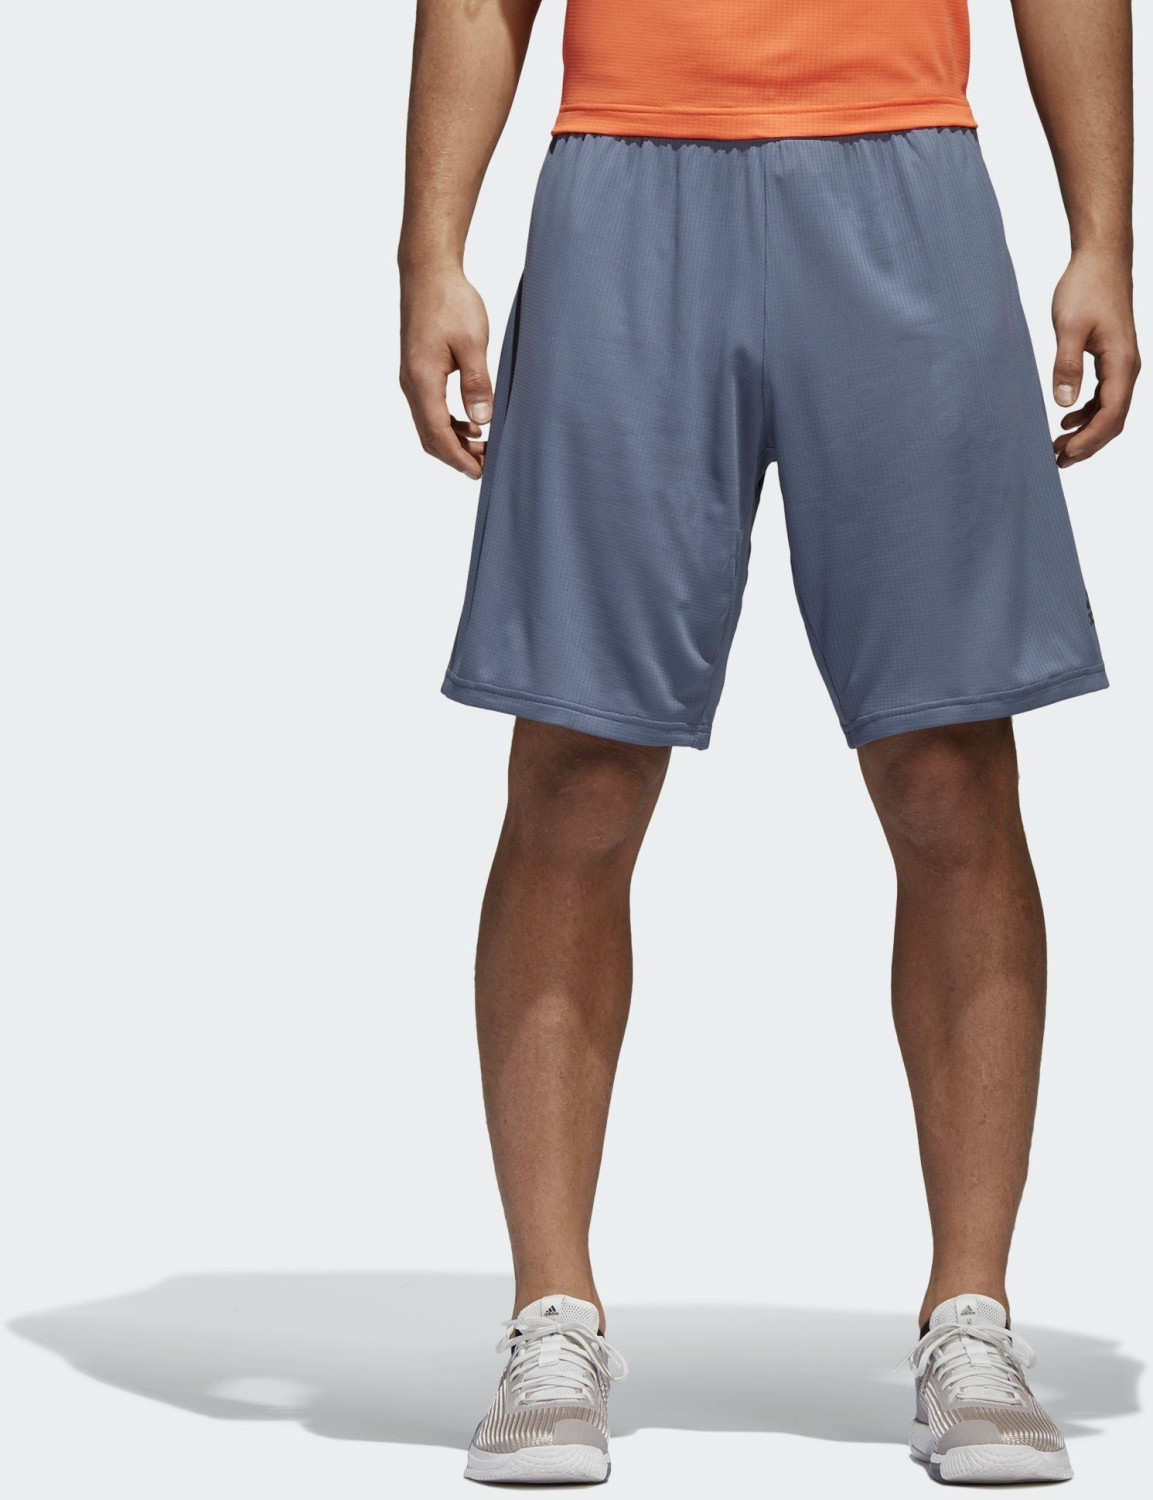 Adidas 4KRFT Climachill Shorts ab 30,94 € Preisvergleich idealo.de